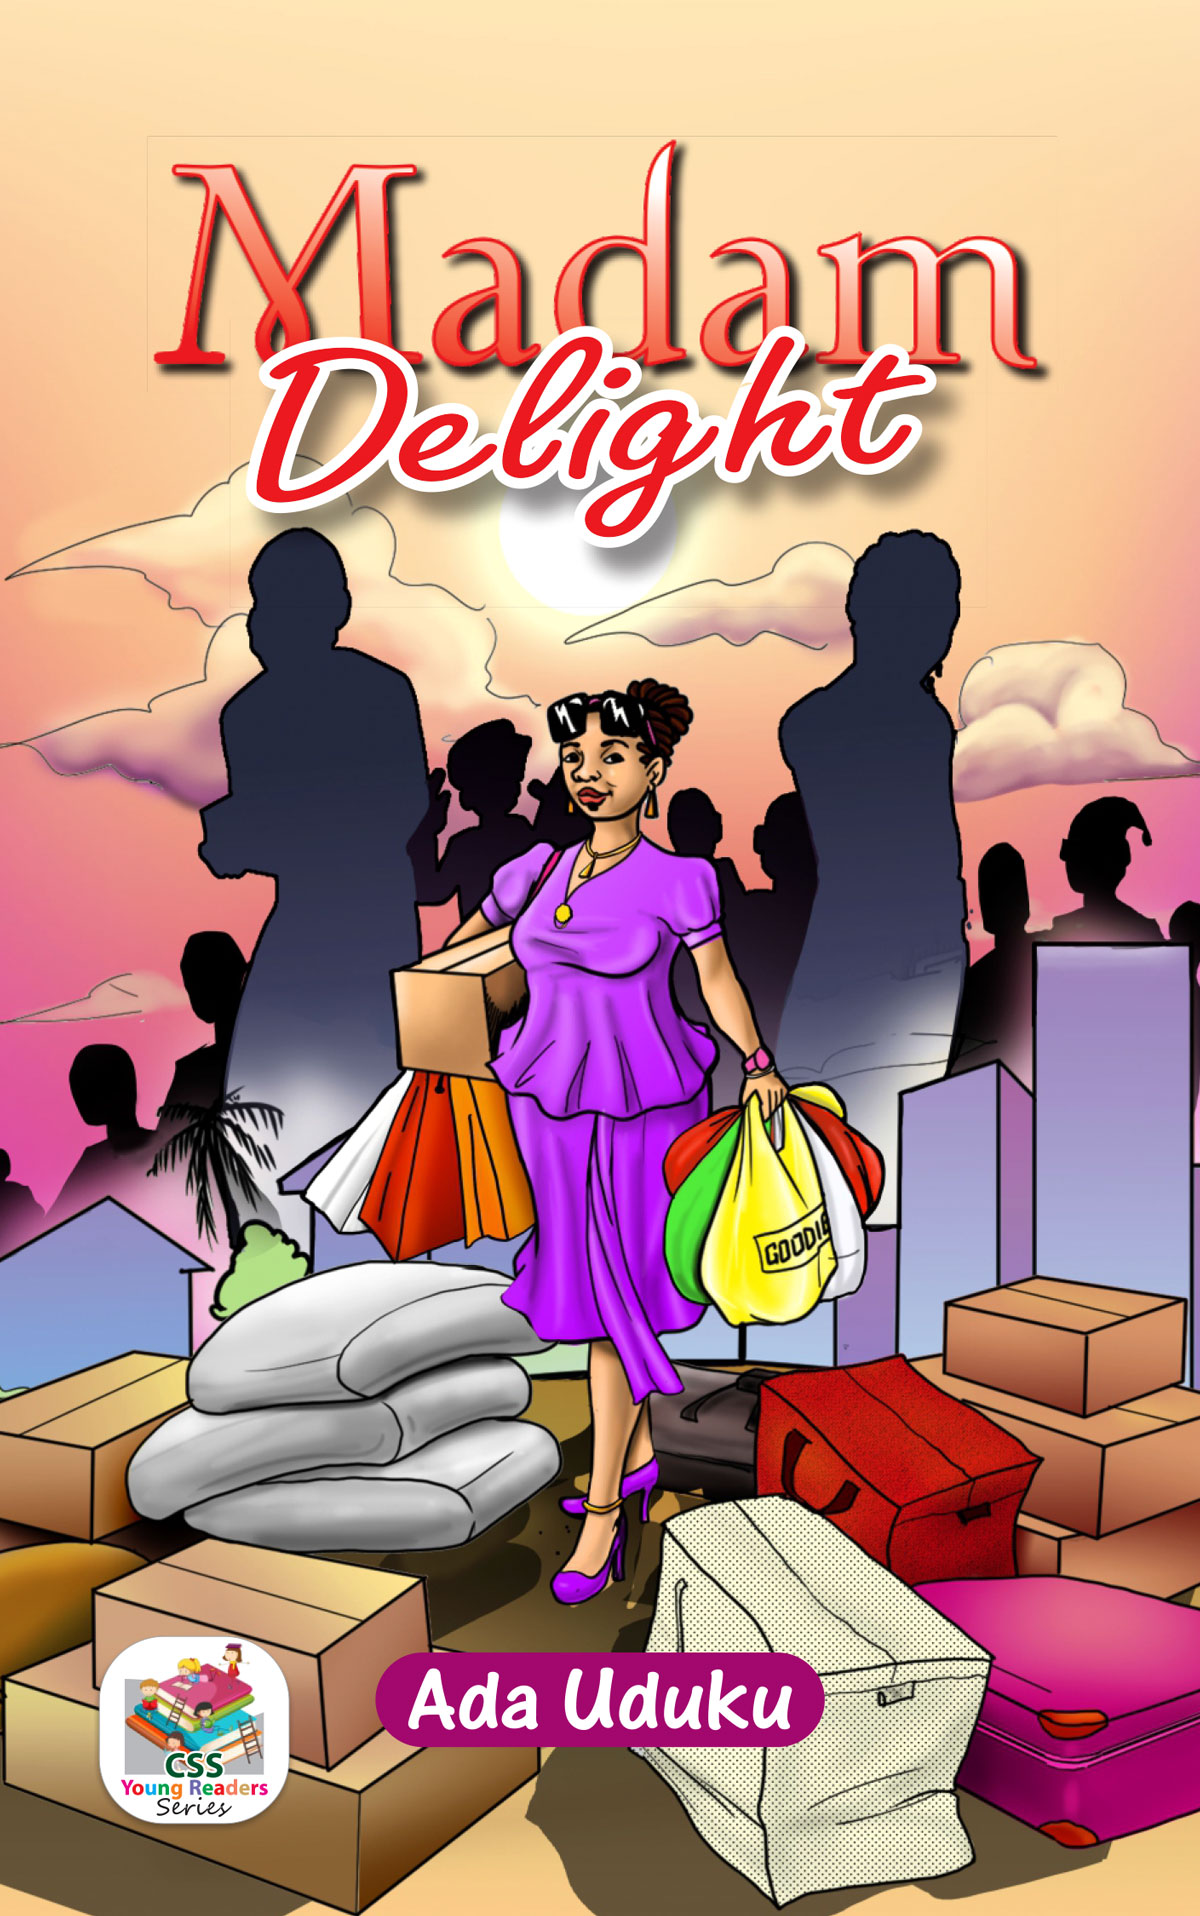 Madam Delight Book Cover